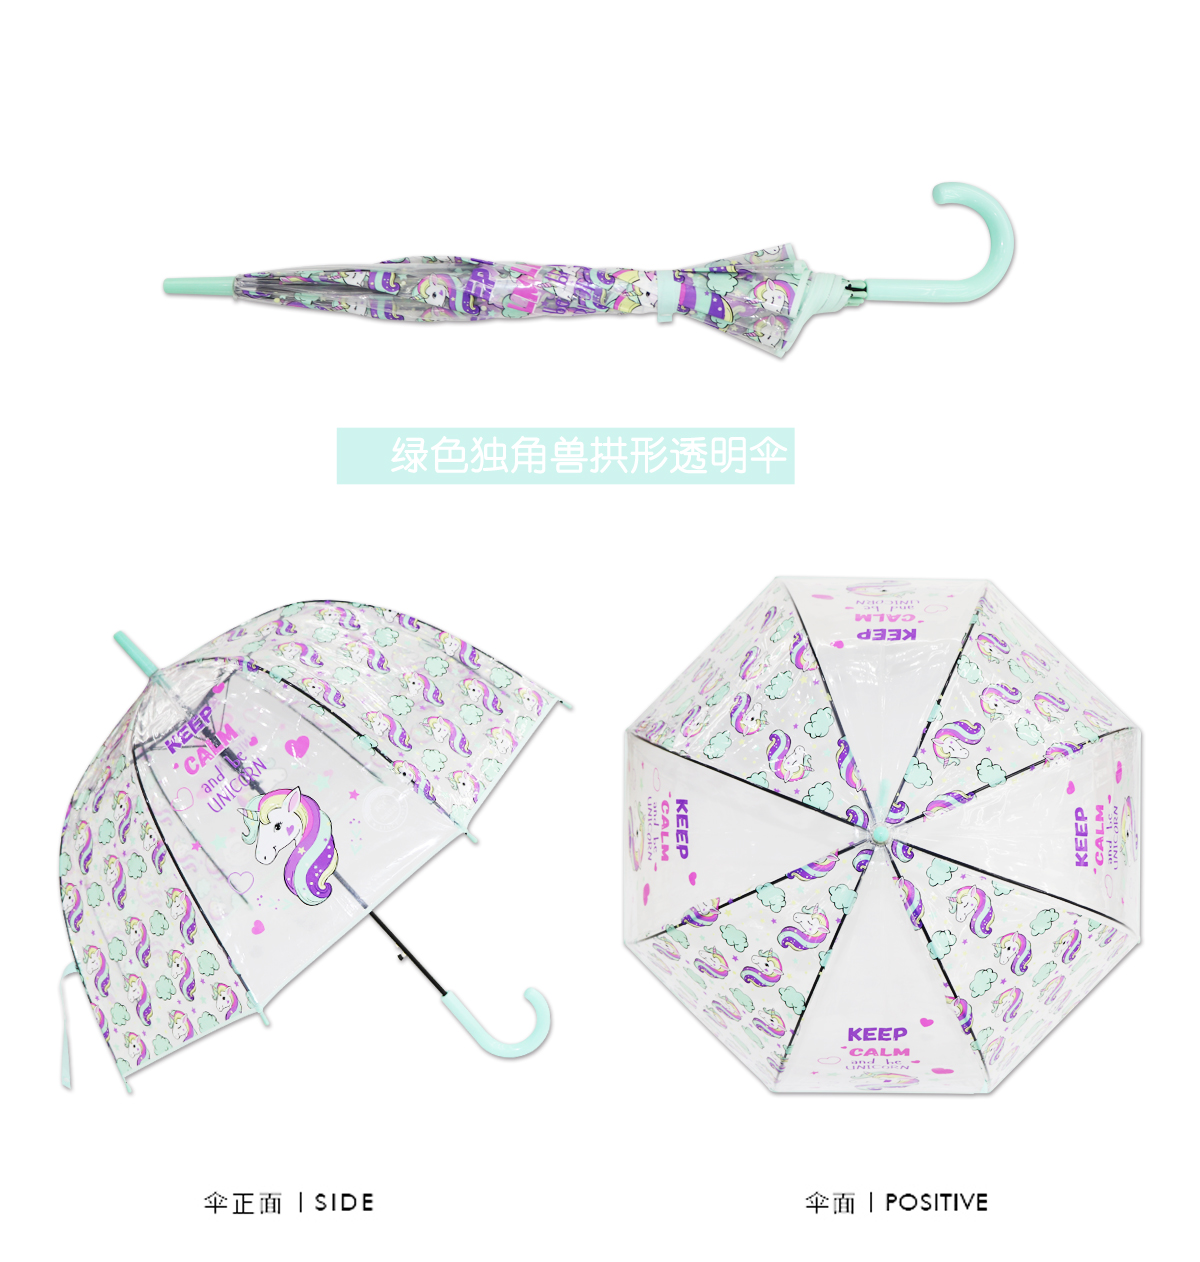 义乌好货雨伞RST713A独角兽雨伞长柄REALSTAR伞阿波罗拱形雨伞umbrella详情图10